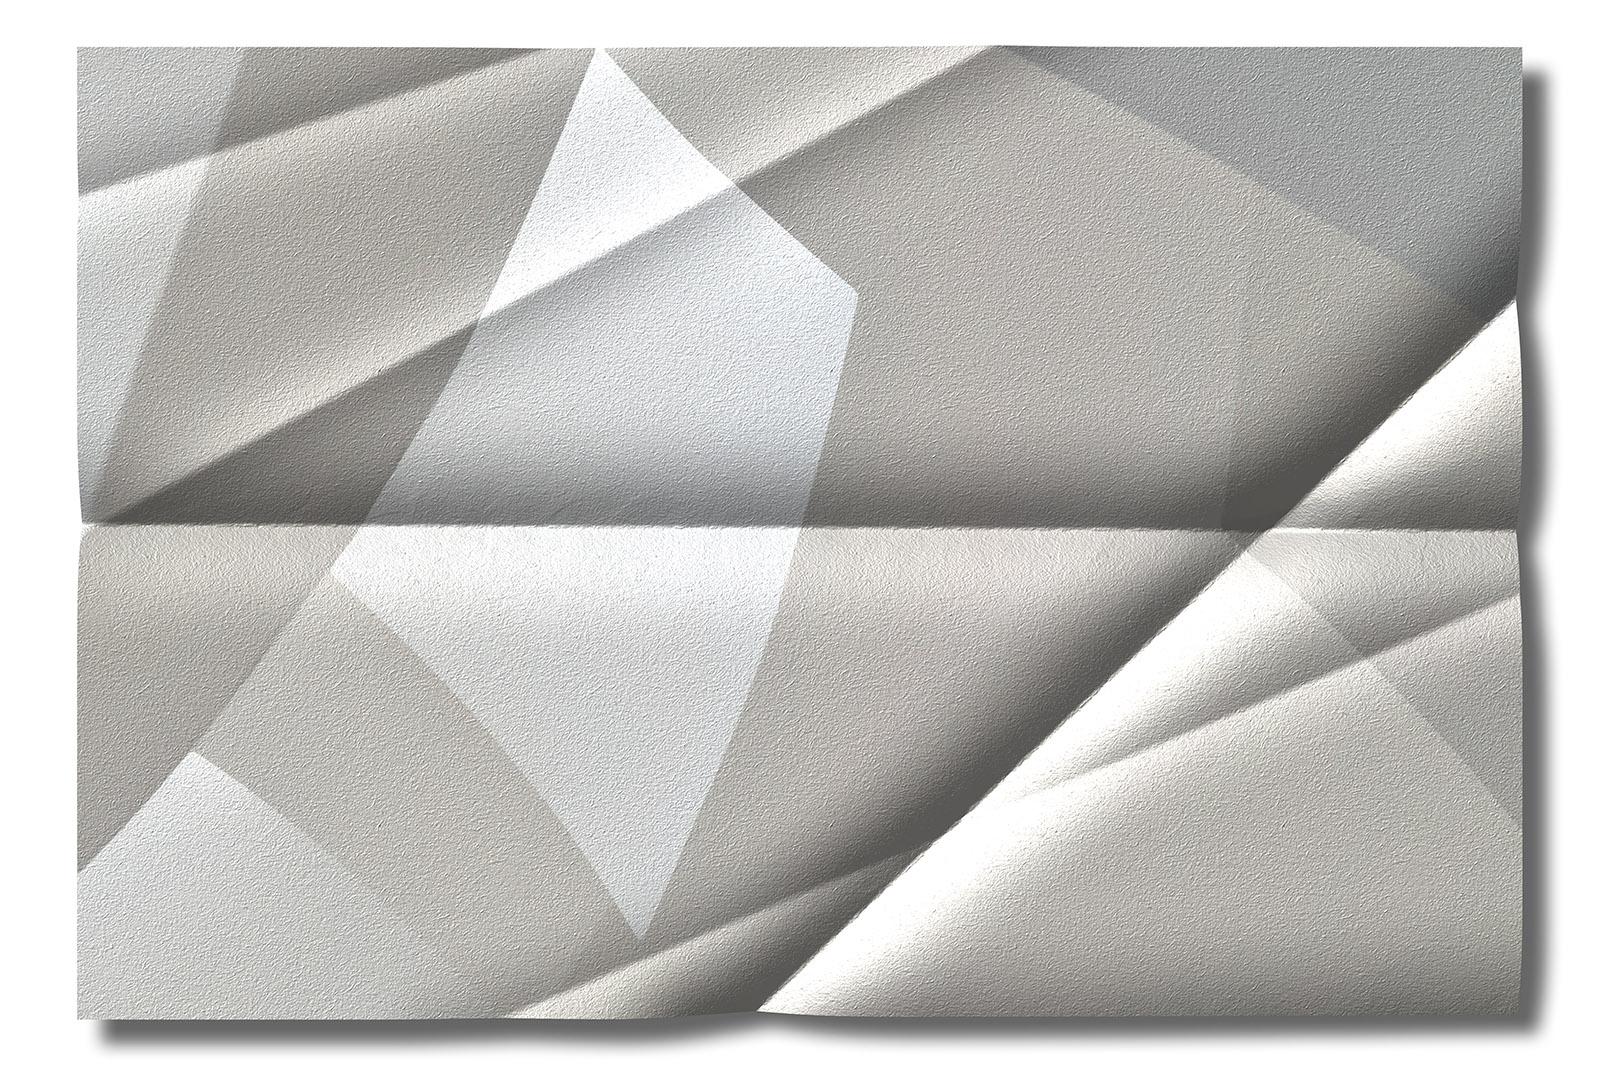 Architektonischer 2- signierter abstrakter Kunstdruck in limitierter Auflage, Großformat, Weiß (Grau), Abstract Photograph, von Michael Banks